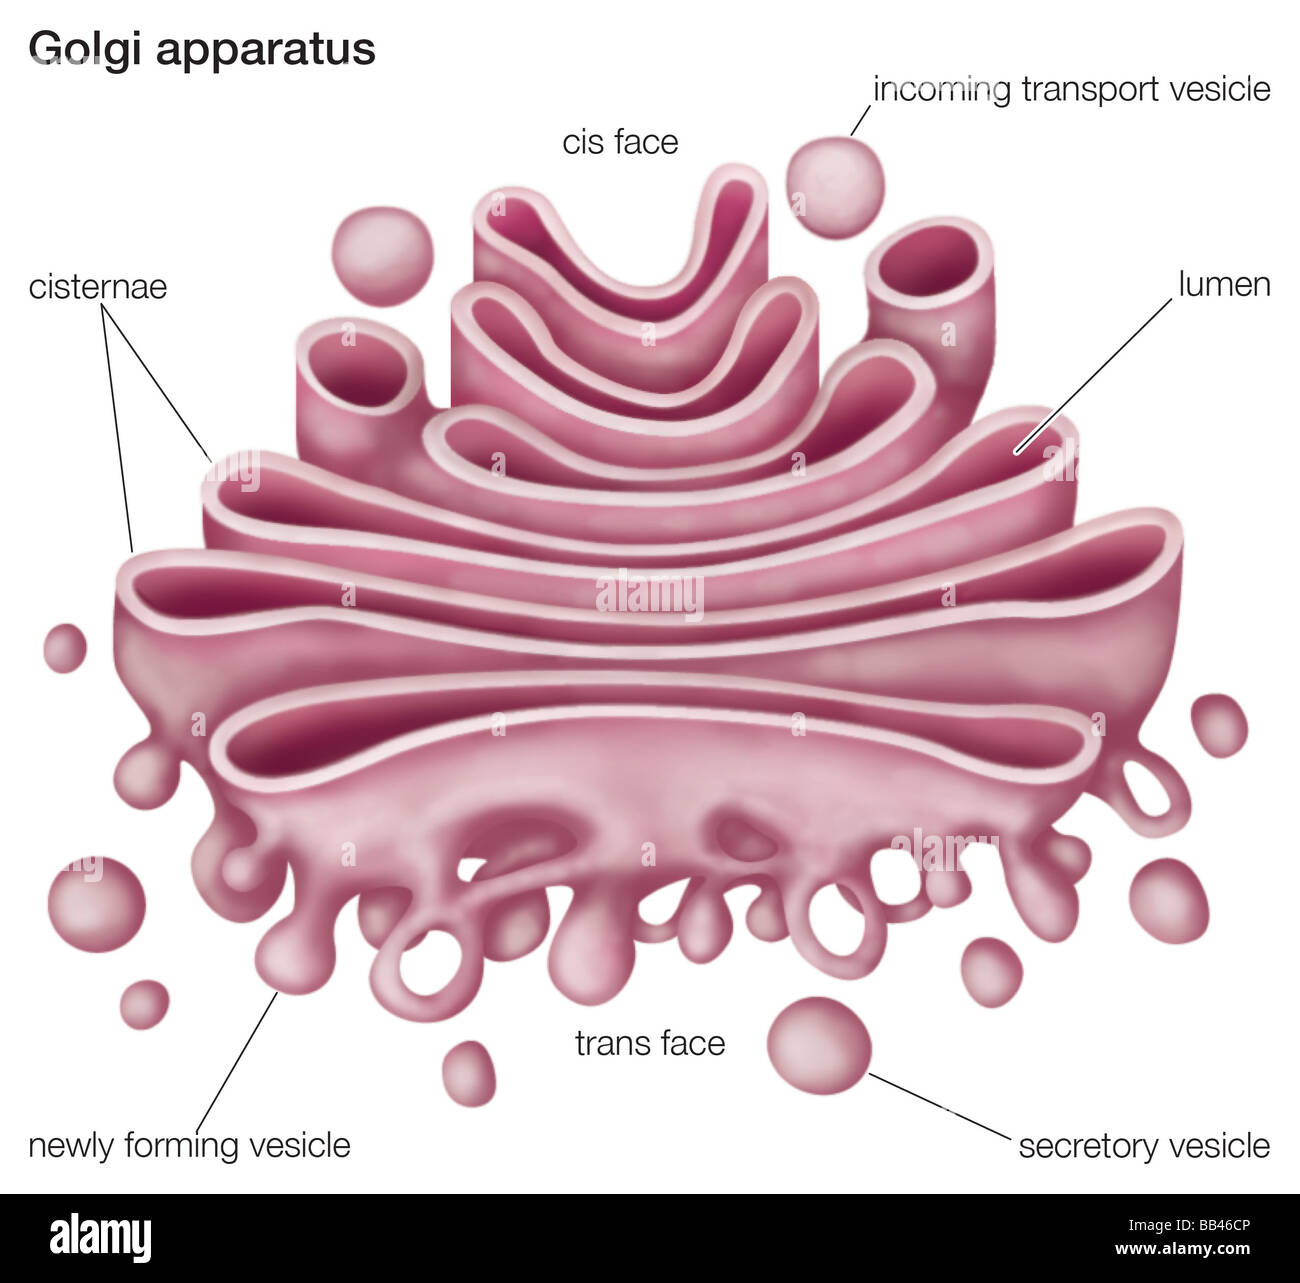 L'appareil de Golgi, ou complexes, joue un rôle important dans la modification et le transport des protéines dans la cellule. Banque D'Images